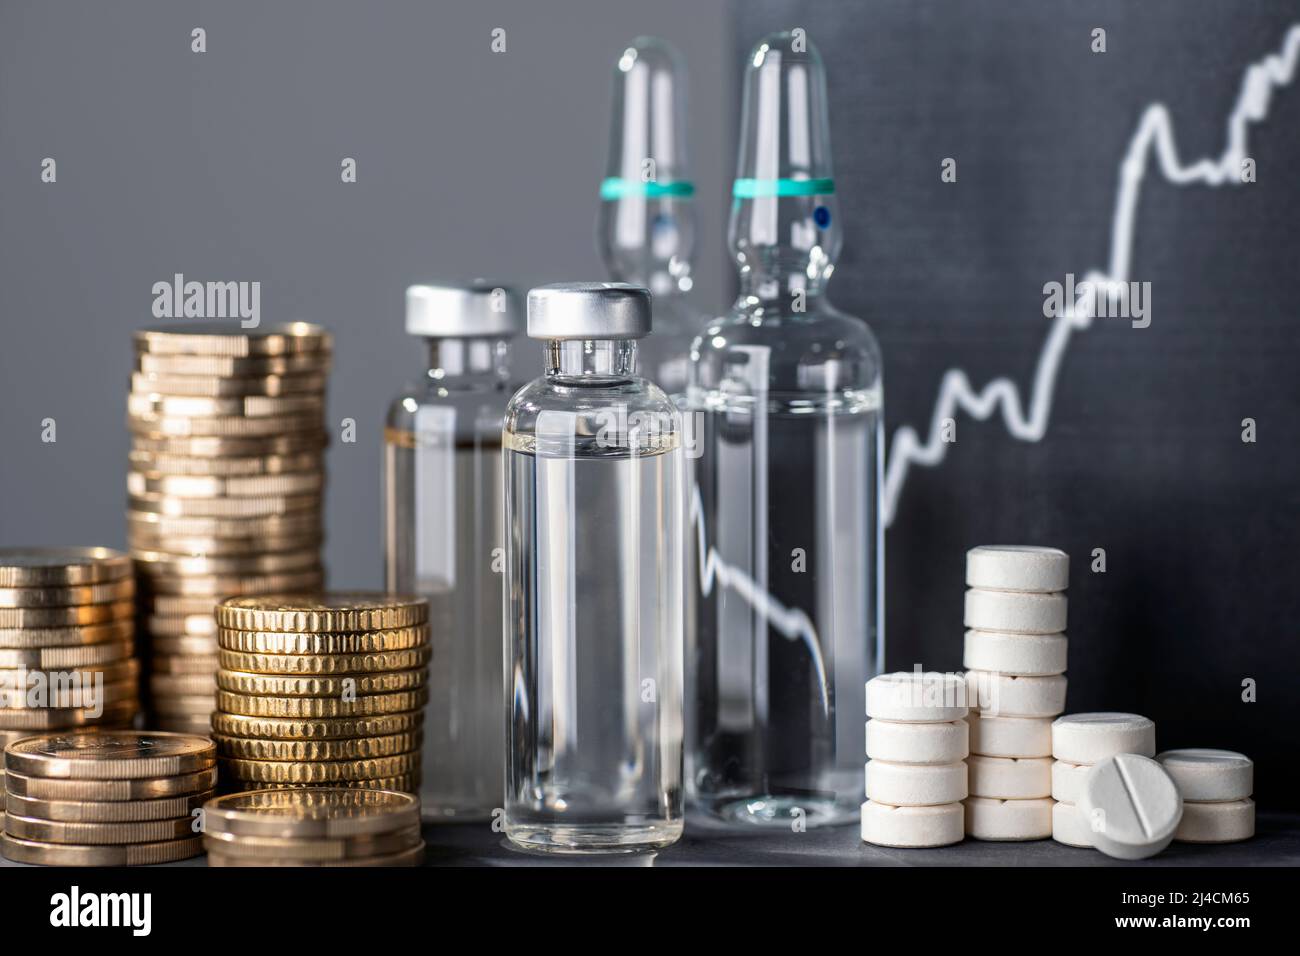 Farmaci e mucchi di denaro con una curva ascendente come simbolo per l'aumento dei prezzi delle scorte farmaceutiche Foto Stock